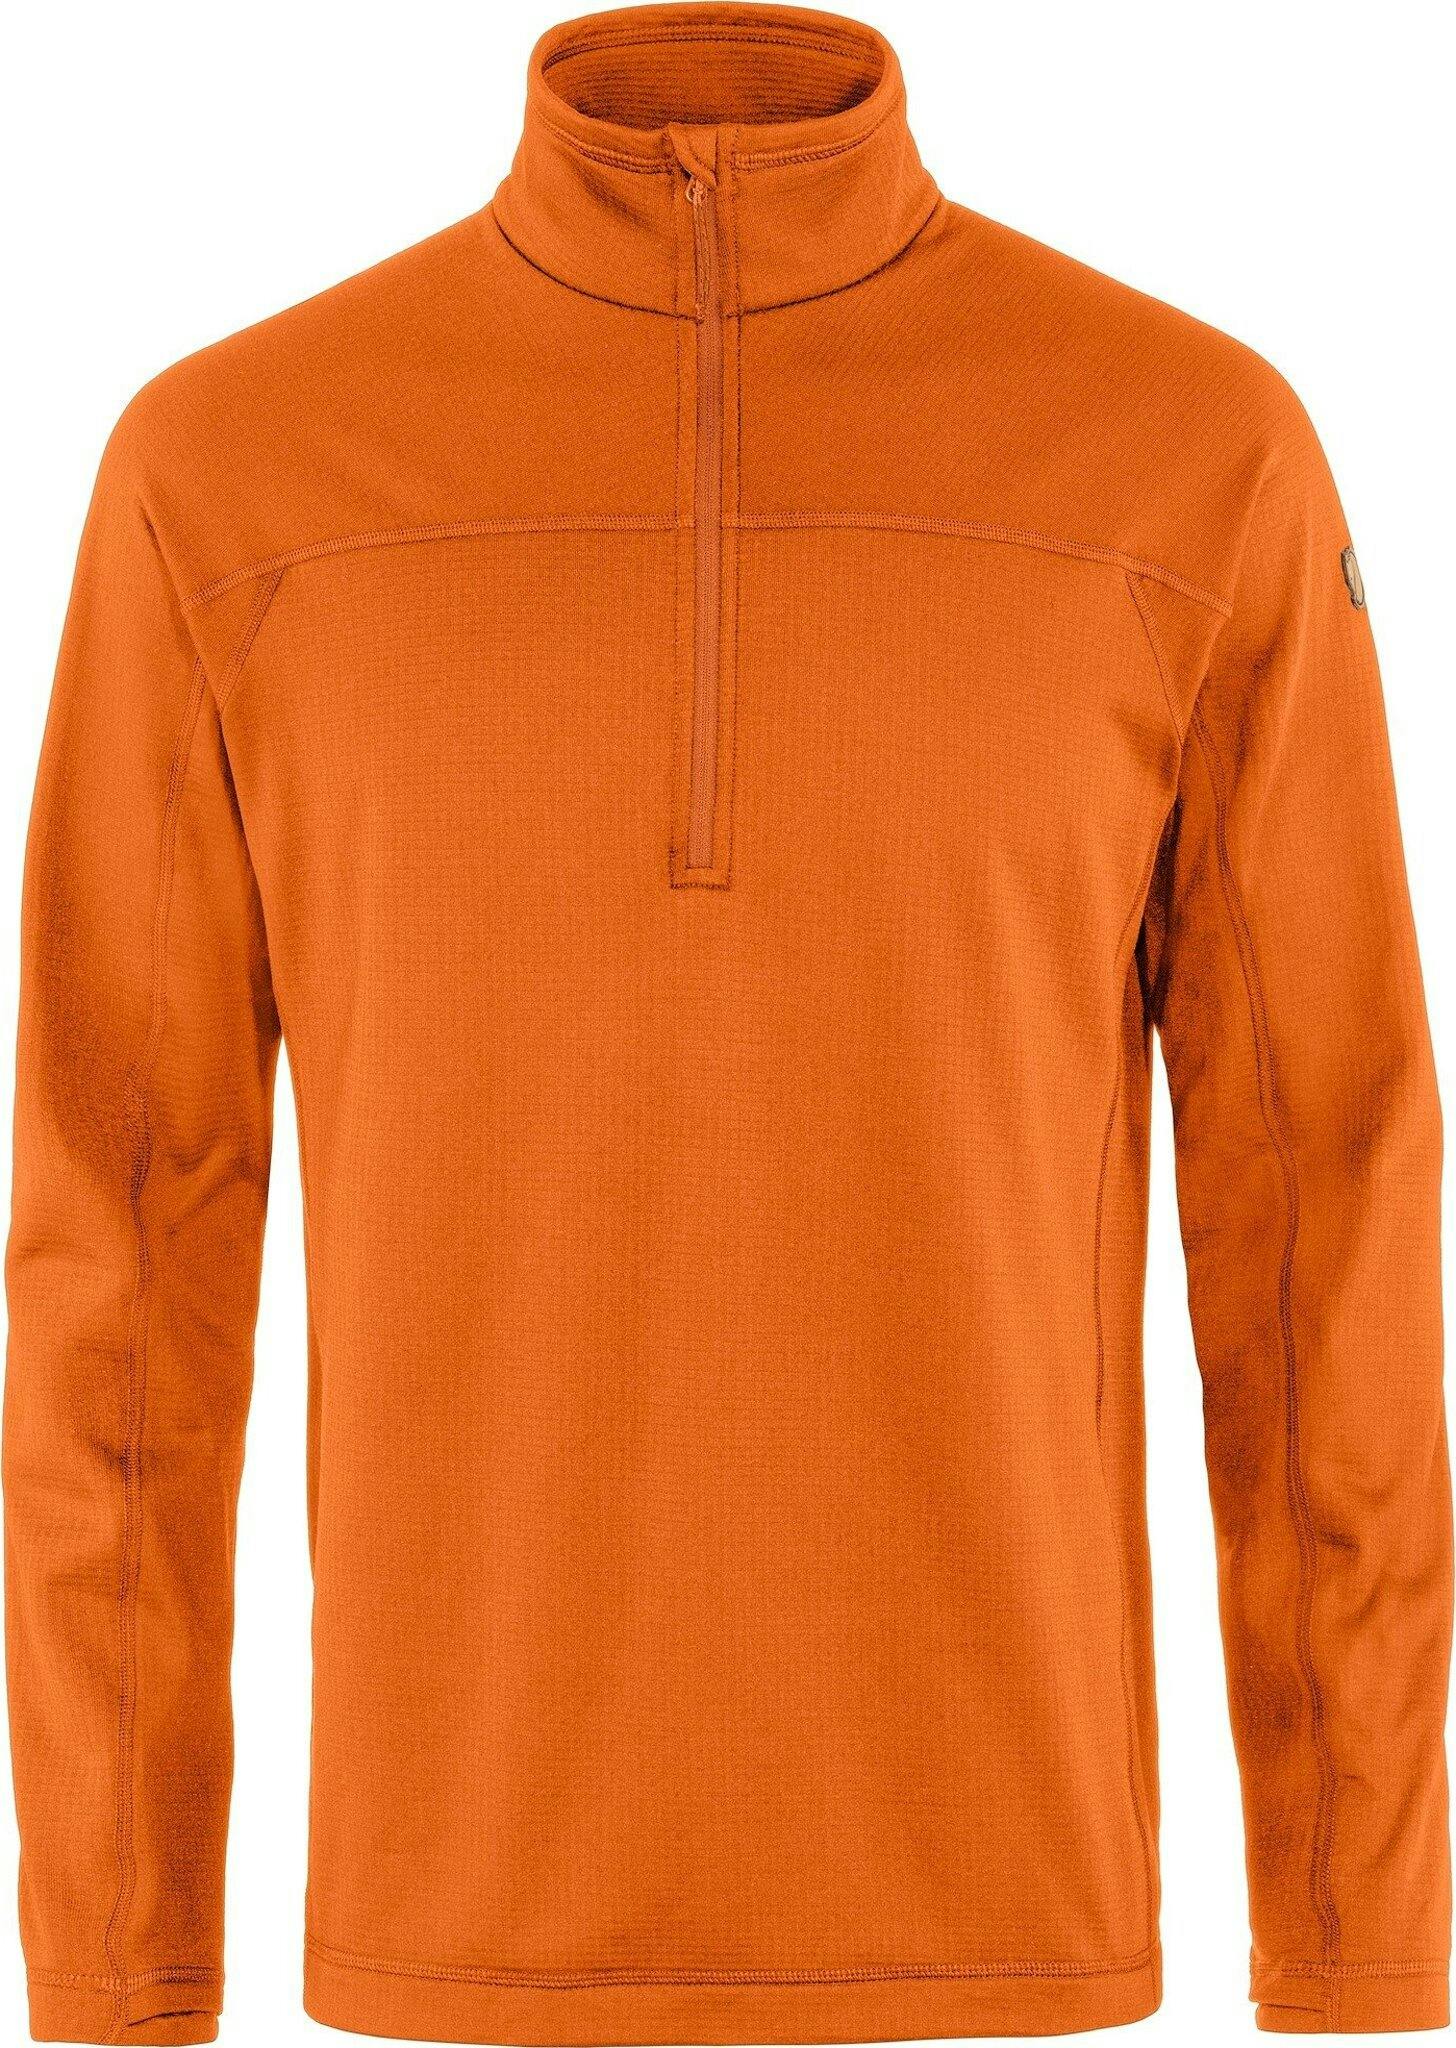 Product image for Abisko Lite Fleece Half Zip Sweater - Men's